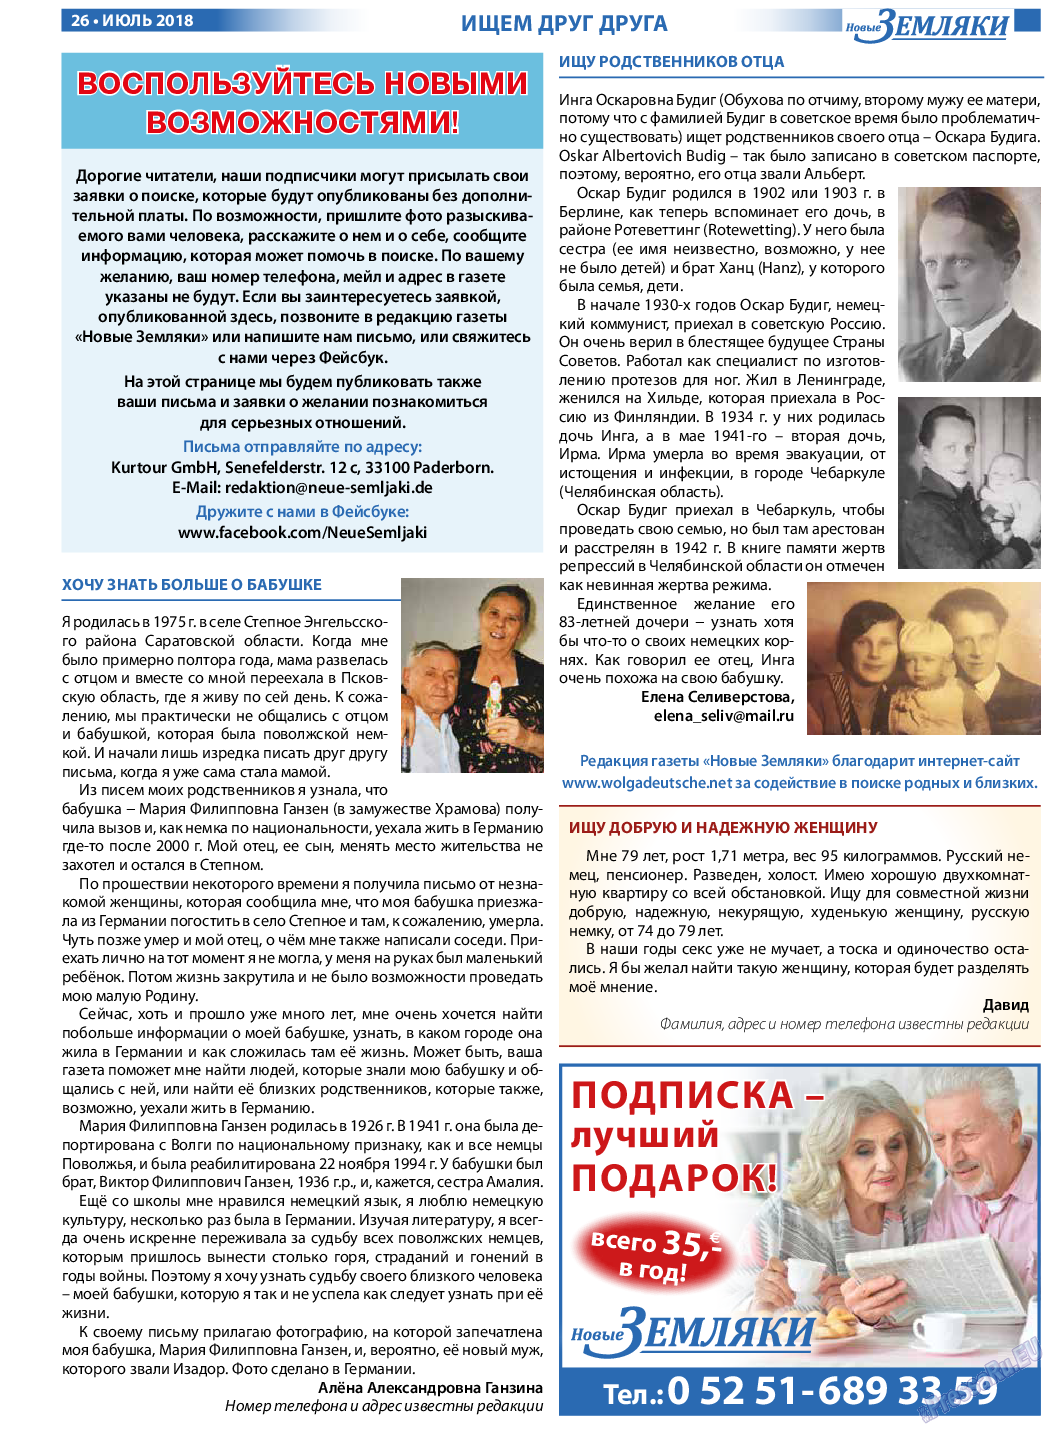 Новые Земляки, газета. 2018 №7 стр.26